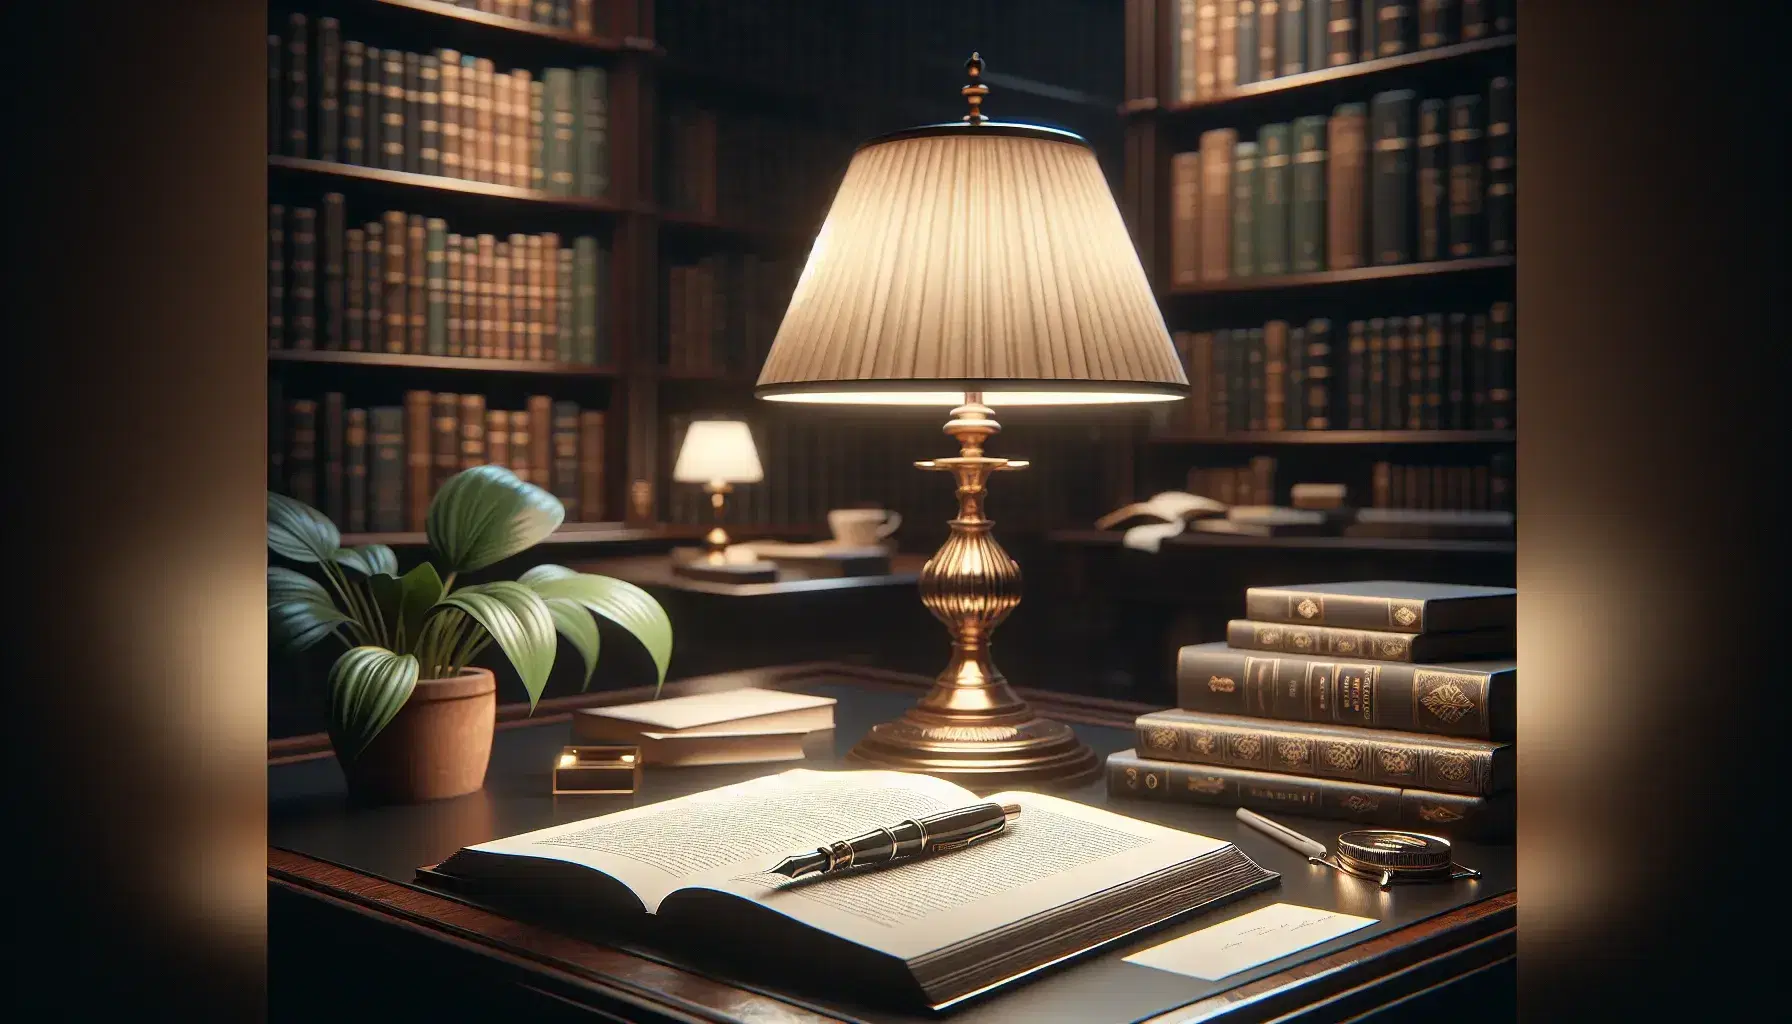 Scena pacifica in biblioteca con lampada da tavolo accesa, libro aperto, penna stilografica nera e scaffali di legno scuro pieni di libri.